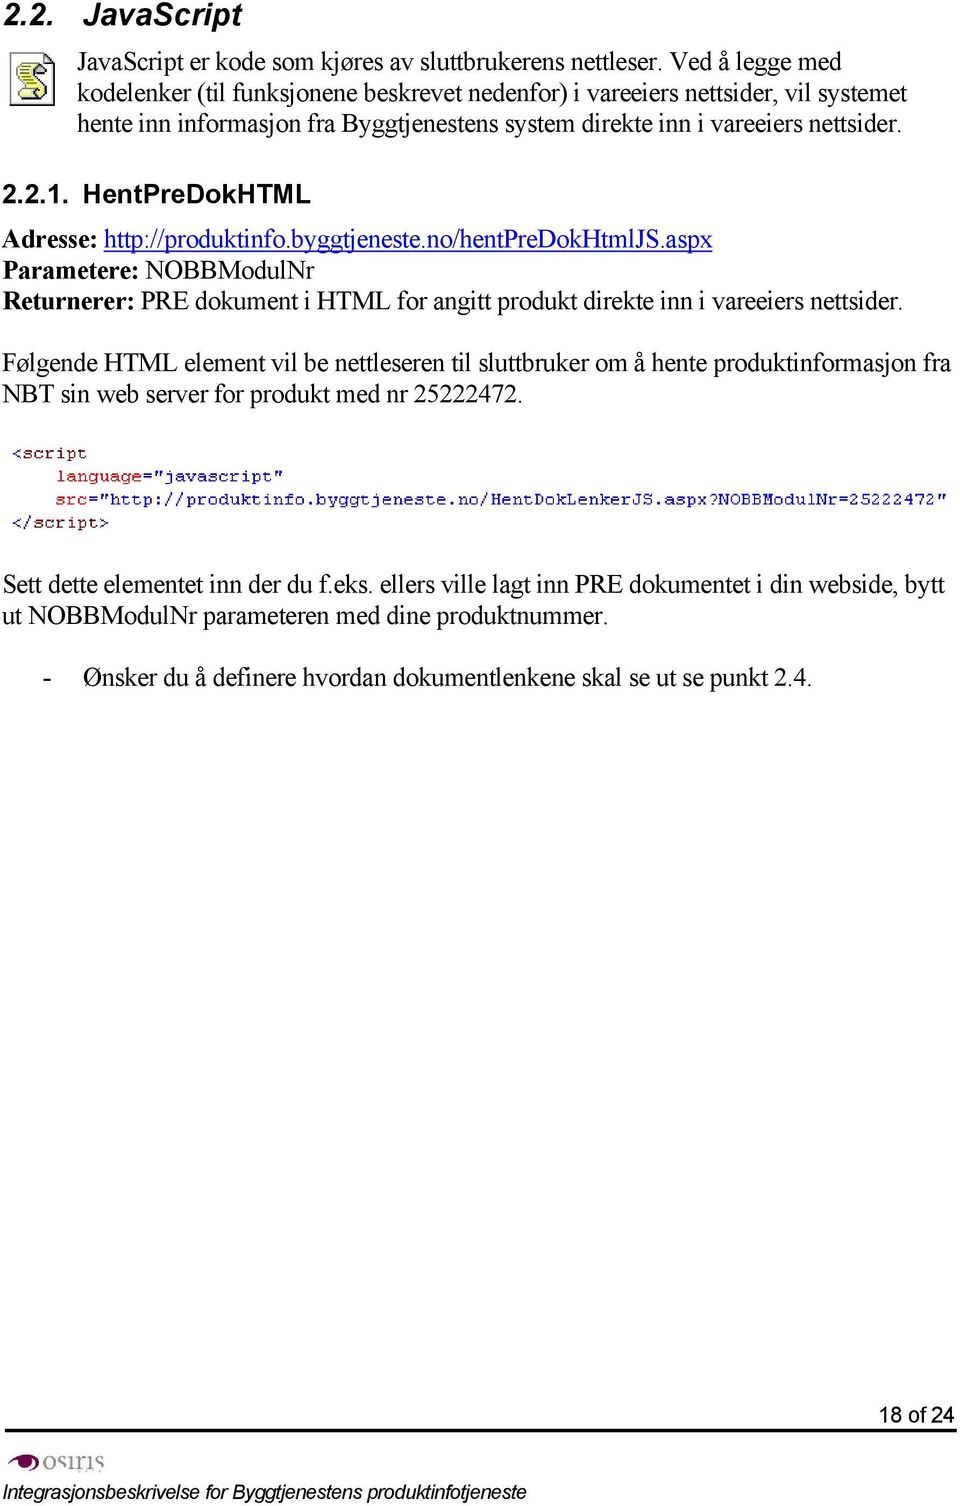 HentPreDokHTML Adresse: http://produktinfo.byggtjeneste.no/hentpredokhtmljs.aspx Parametere: NOBBModulNr Returnerer: PRE dokument i HTML for angitt produkt direkte inn i vareeiers nettsider.